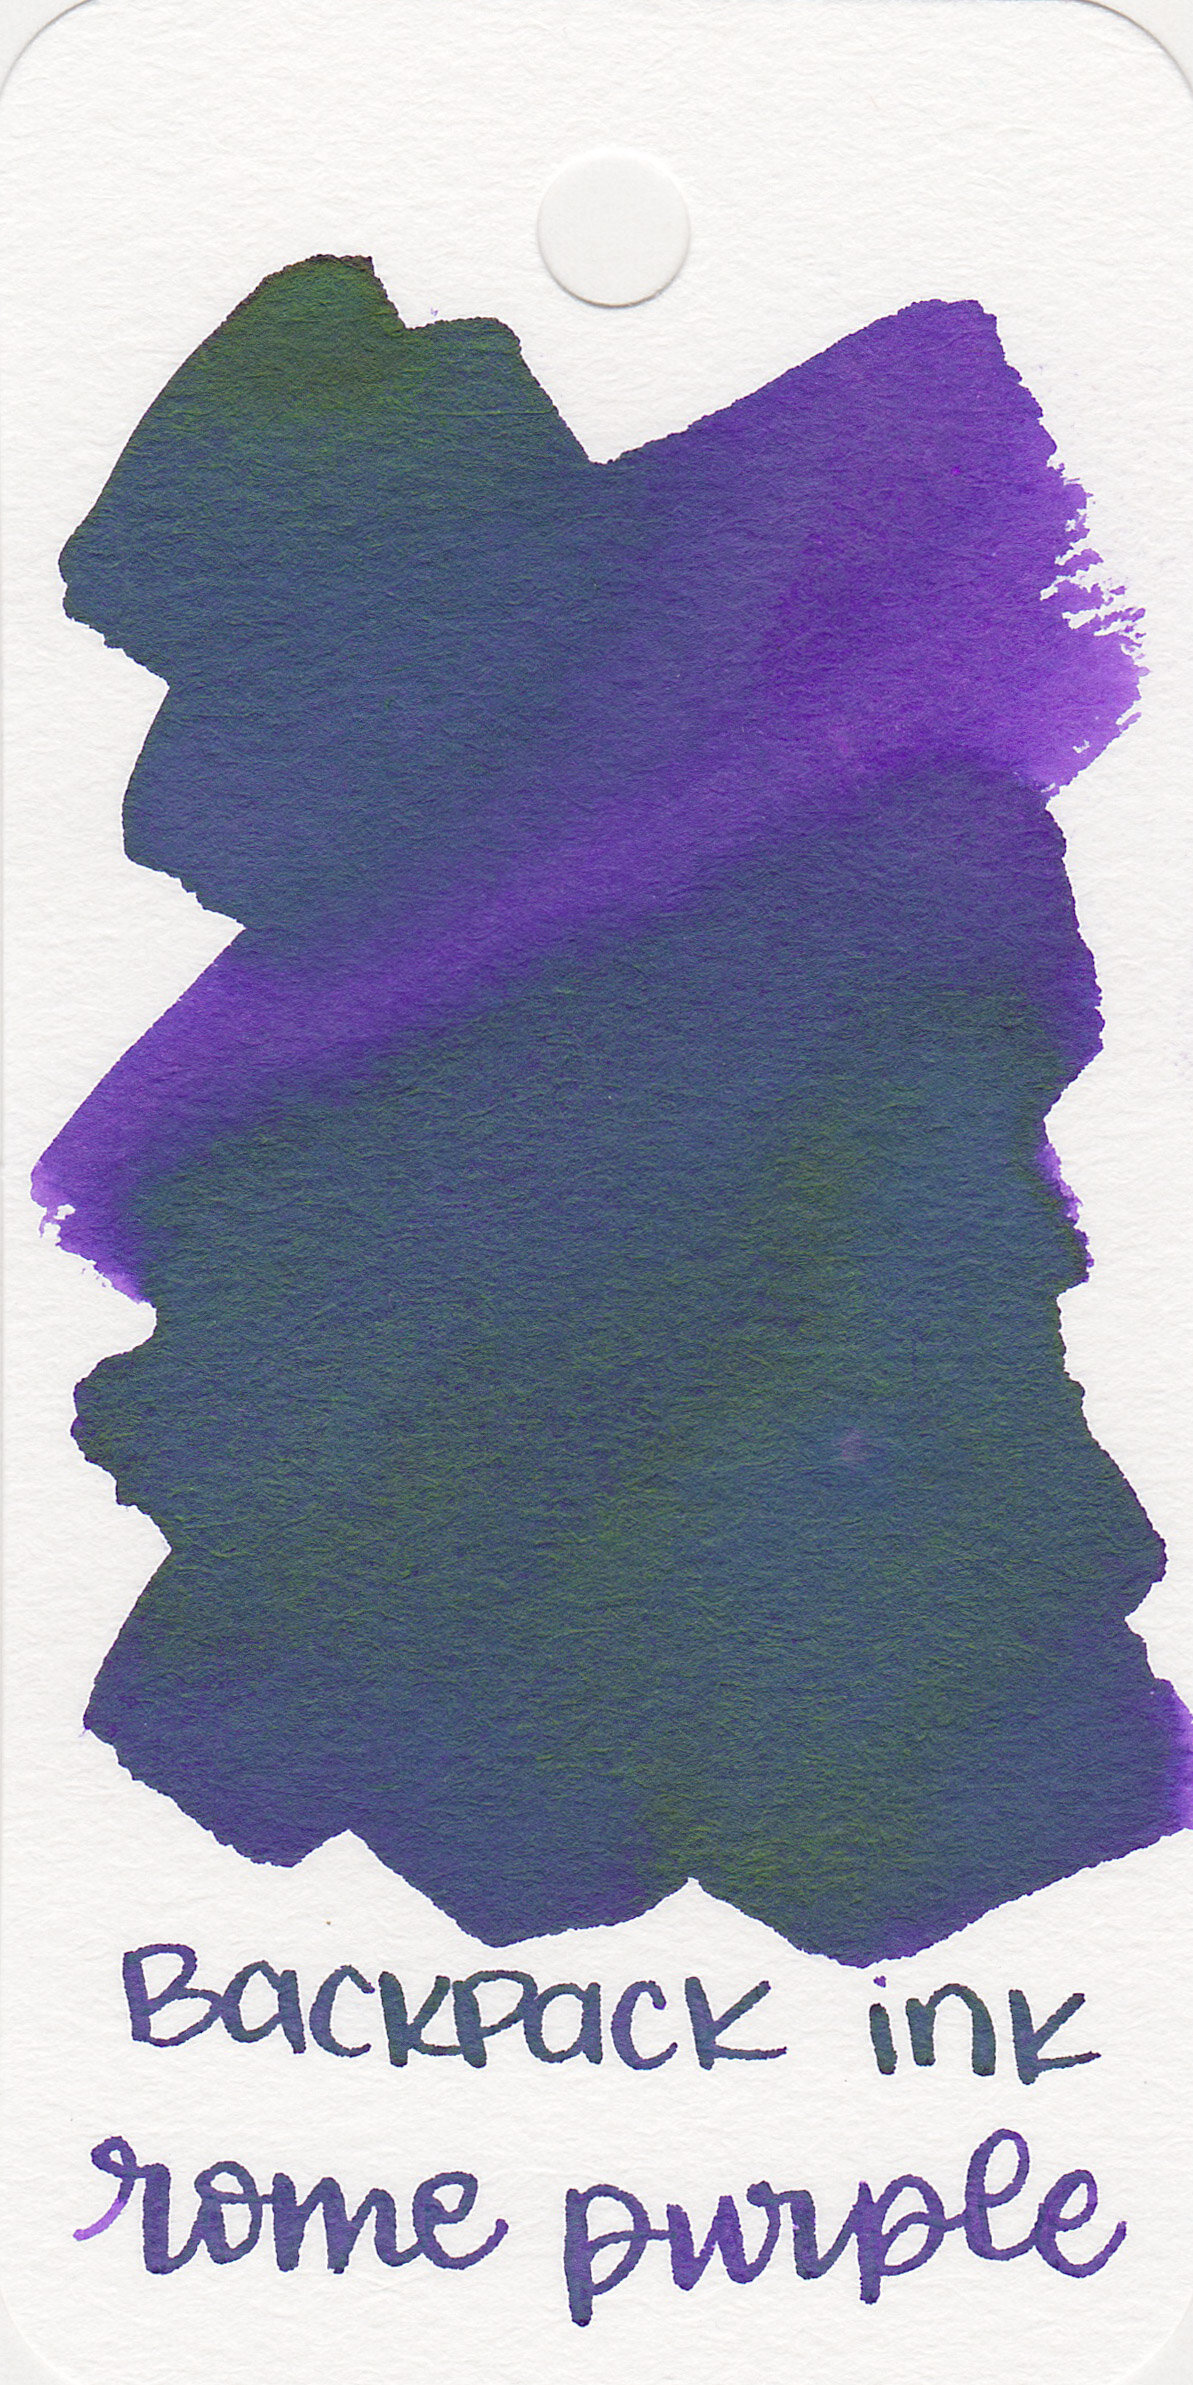 bp-rome-purple-1.jpg